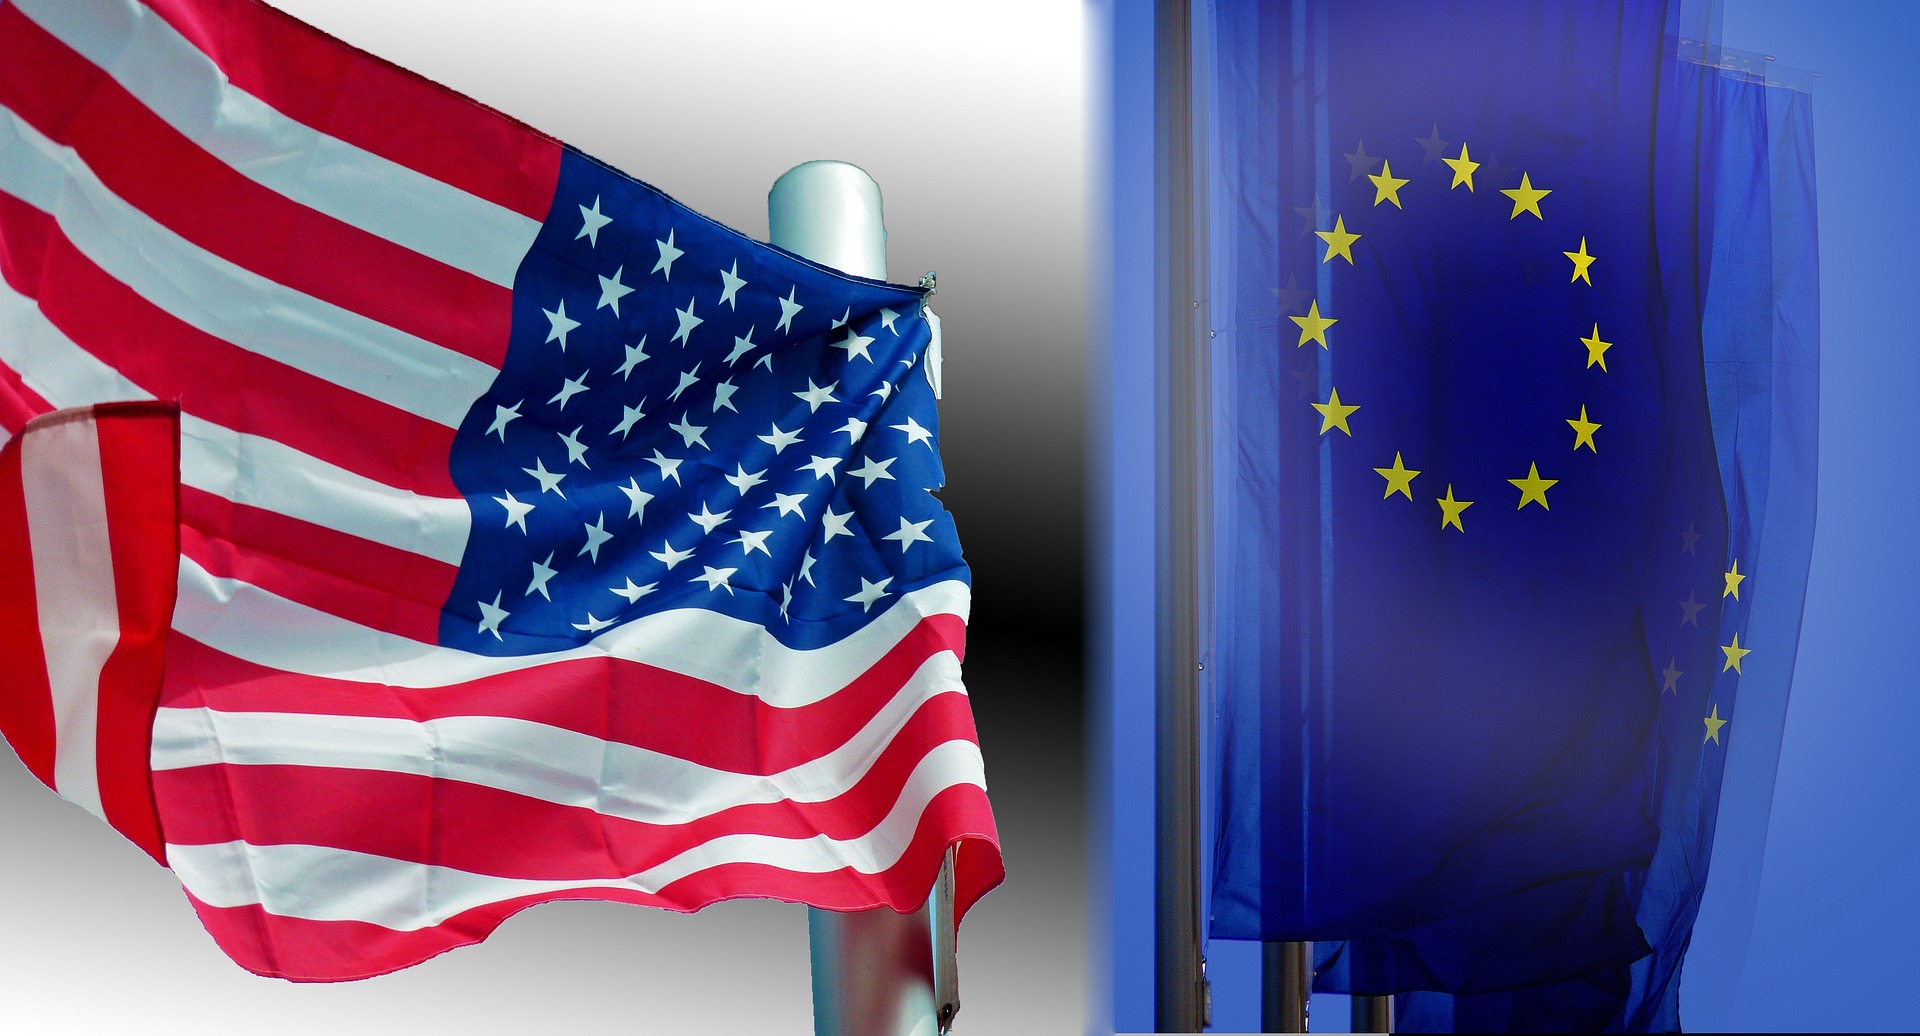 Europäisches Förderprogramm gefordert: Warum die US-Politik für Europa problematisch sein könnte